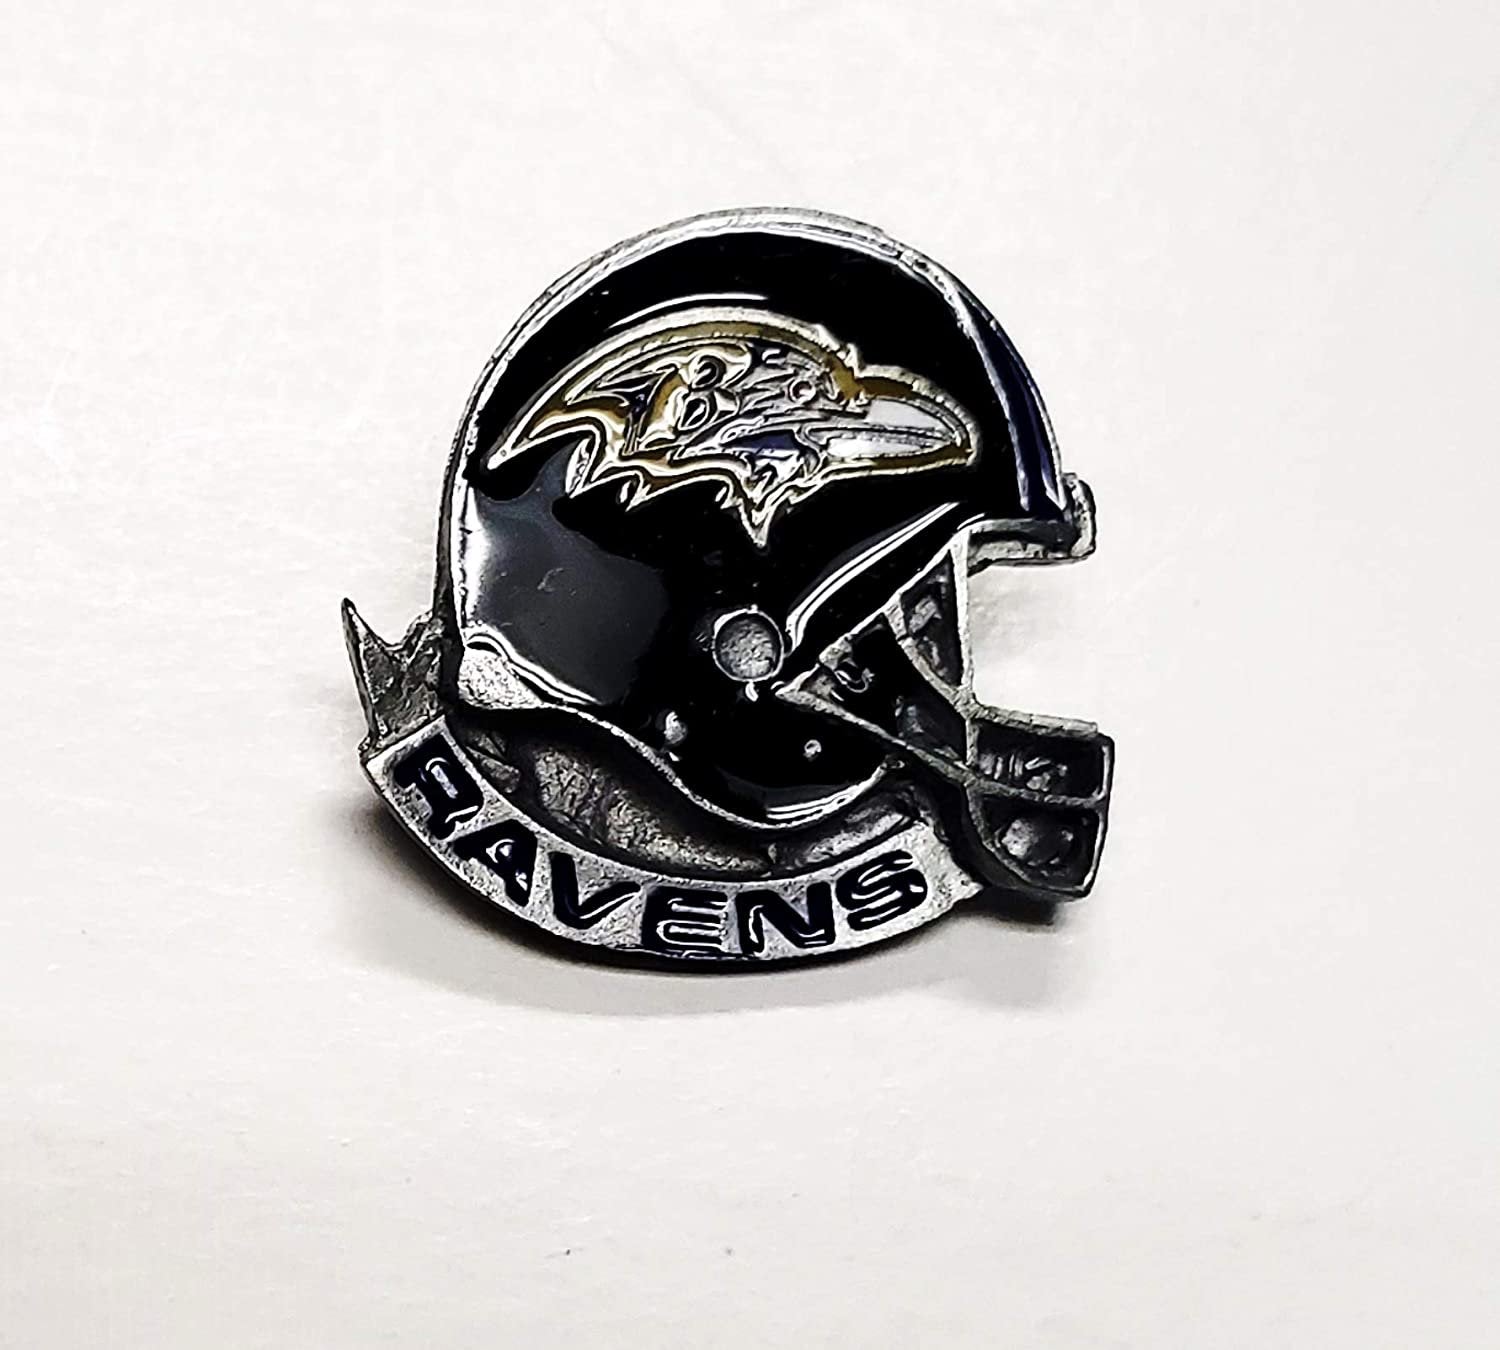 Baltimore Ravens Helmet Premium Metal Pin, Lapel Hat Tie, Push Pin Backing